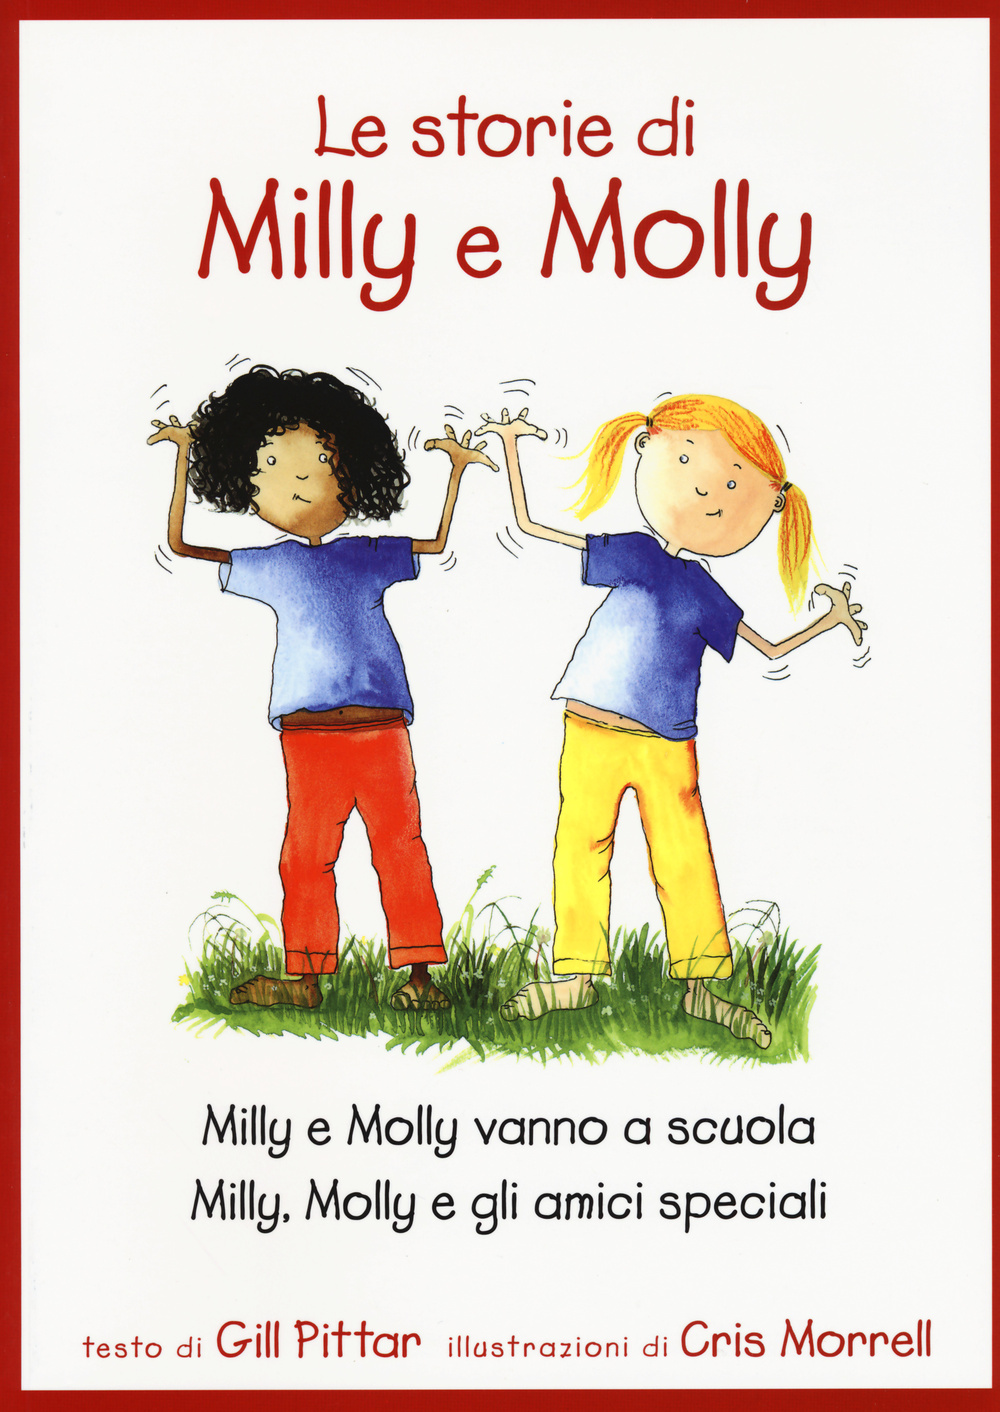 Le storie di Milly e Molly. Milly e Molly vanno a scuola-Milly, Molly e gli amici speciali